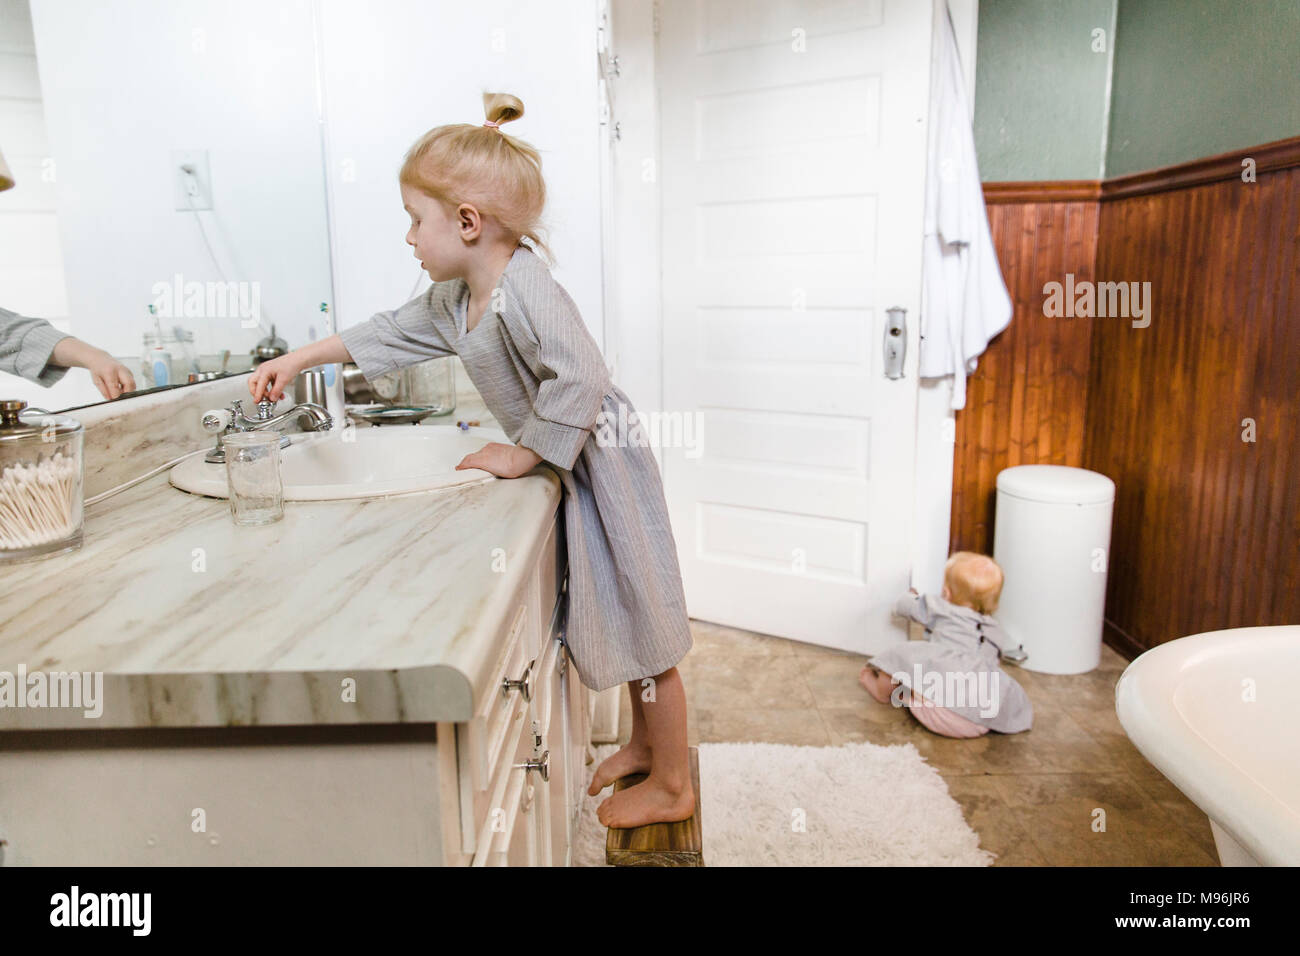 Ragazza con lavandino mentre il bambino si siede sul pavimento del bagno Foto Stock